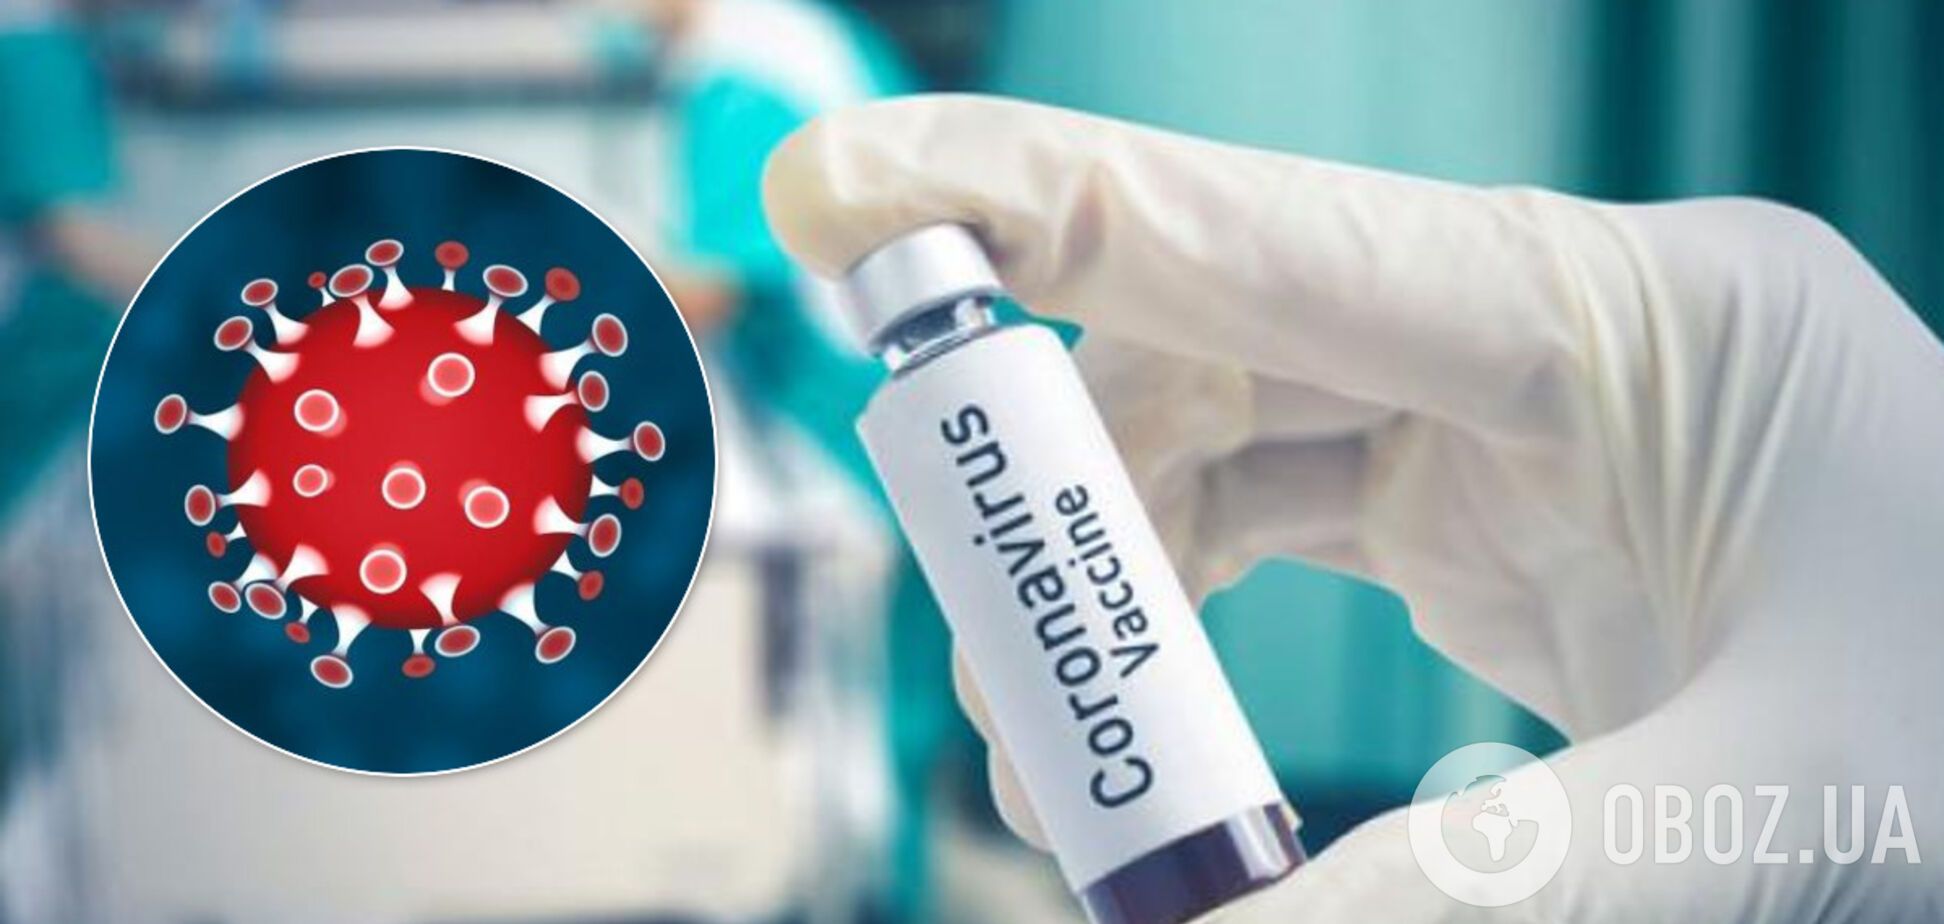 Прототип вакцины от COVID-19 появится к концу апреля – ученые